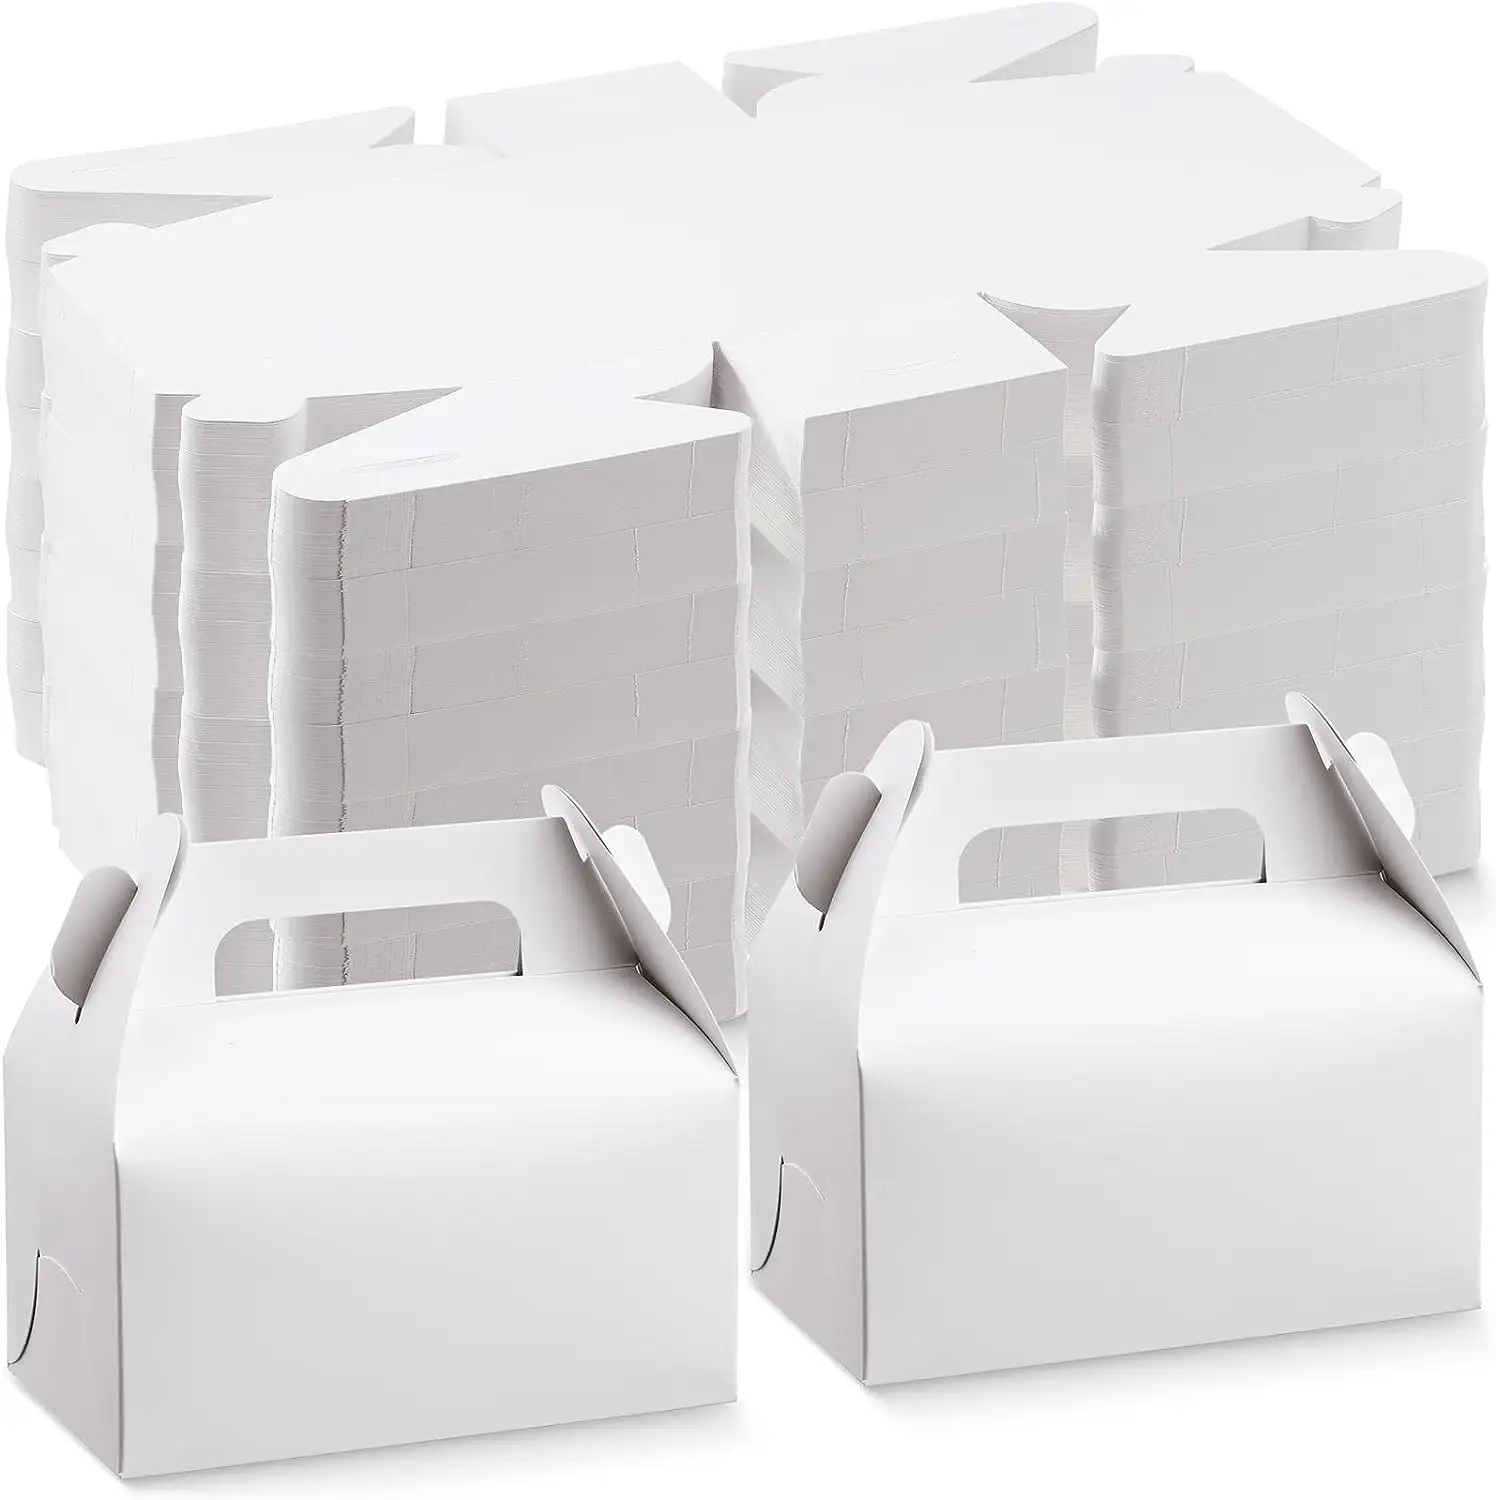 10 יחידות DIY יצירת קוביית מתנת מסיבת יום הולדת לחתונה קופסאות גמלון ריקות קופסאות מתנות נייר אריזת מתנה עוגת ממתקים